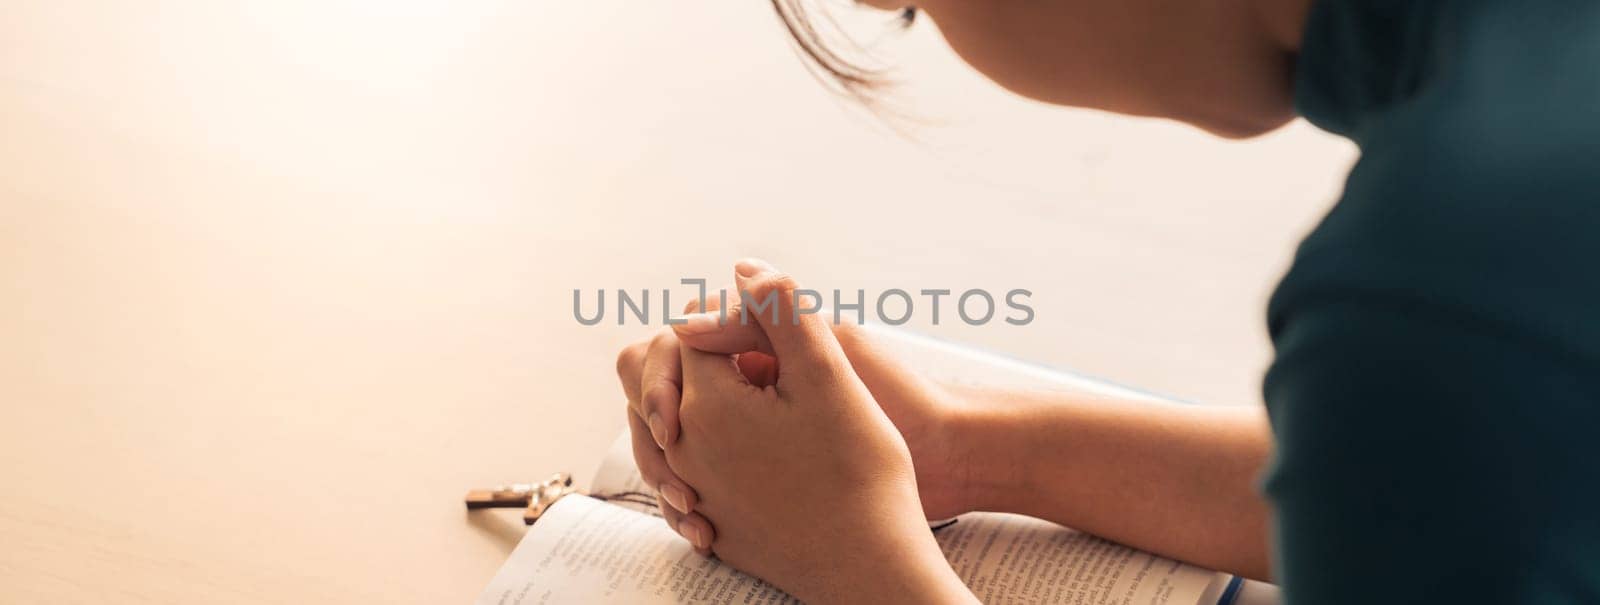 Female folding hand pray to god faithfully with believe in god. Burgeoning. by biancoblue